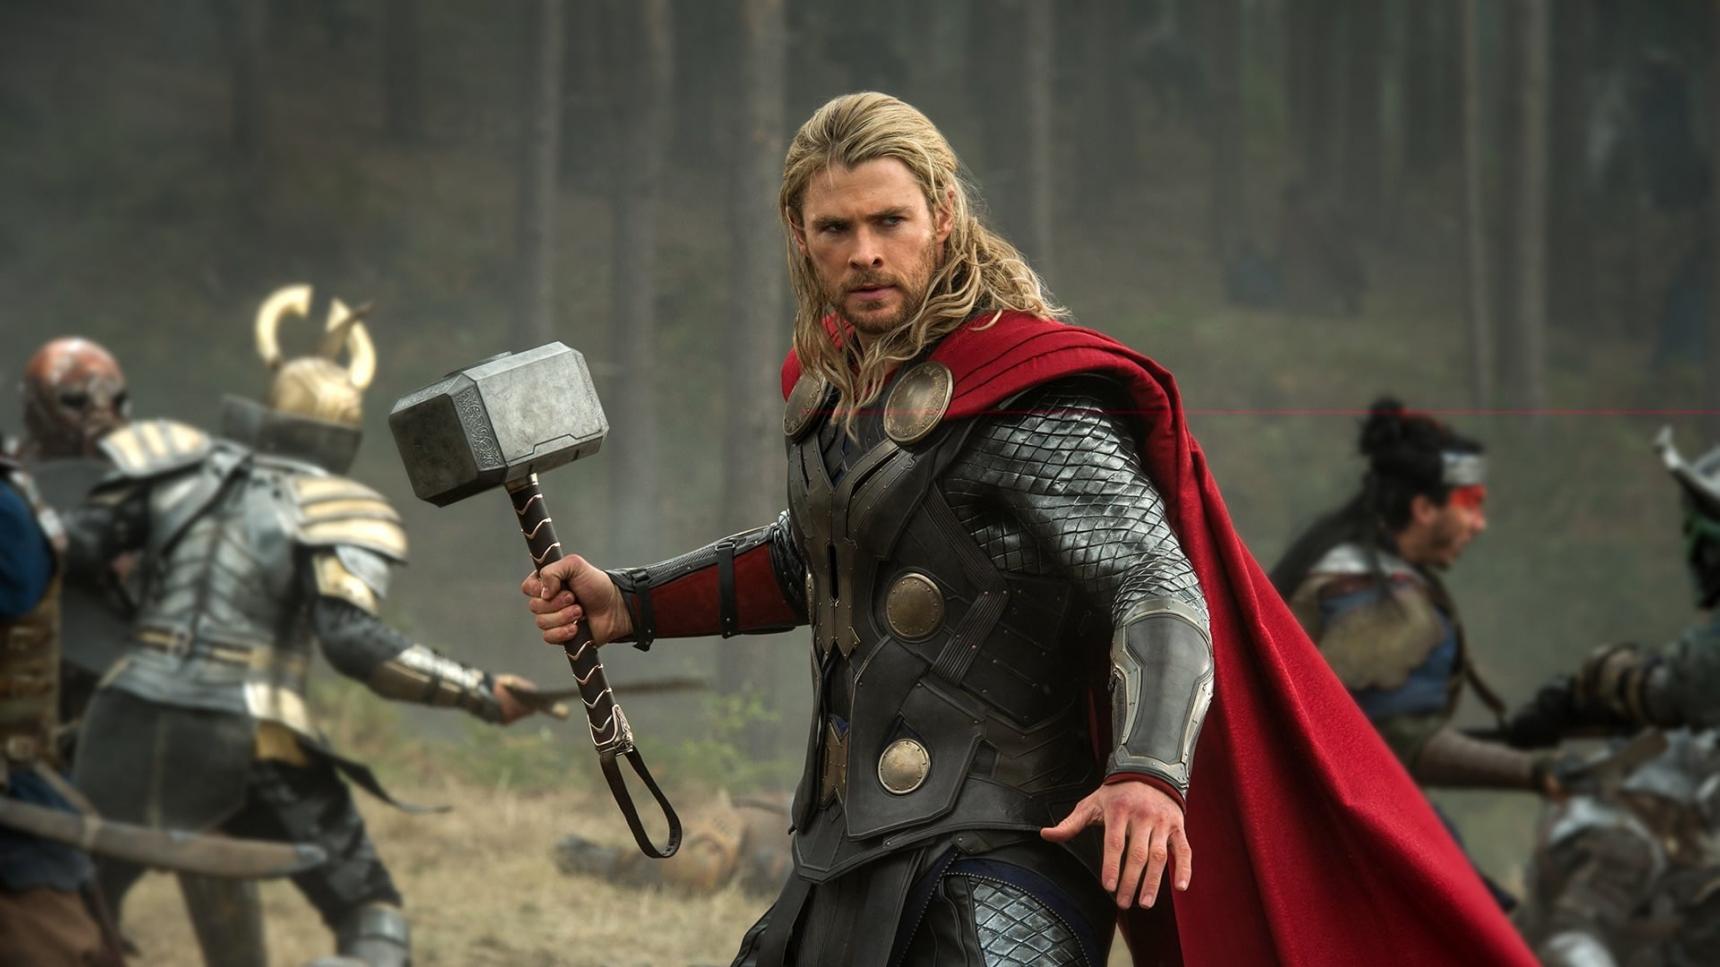 Fondo de pantalla de la película Thor: el mundo oscuro en Cuevana 3 gratis